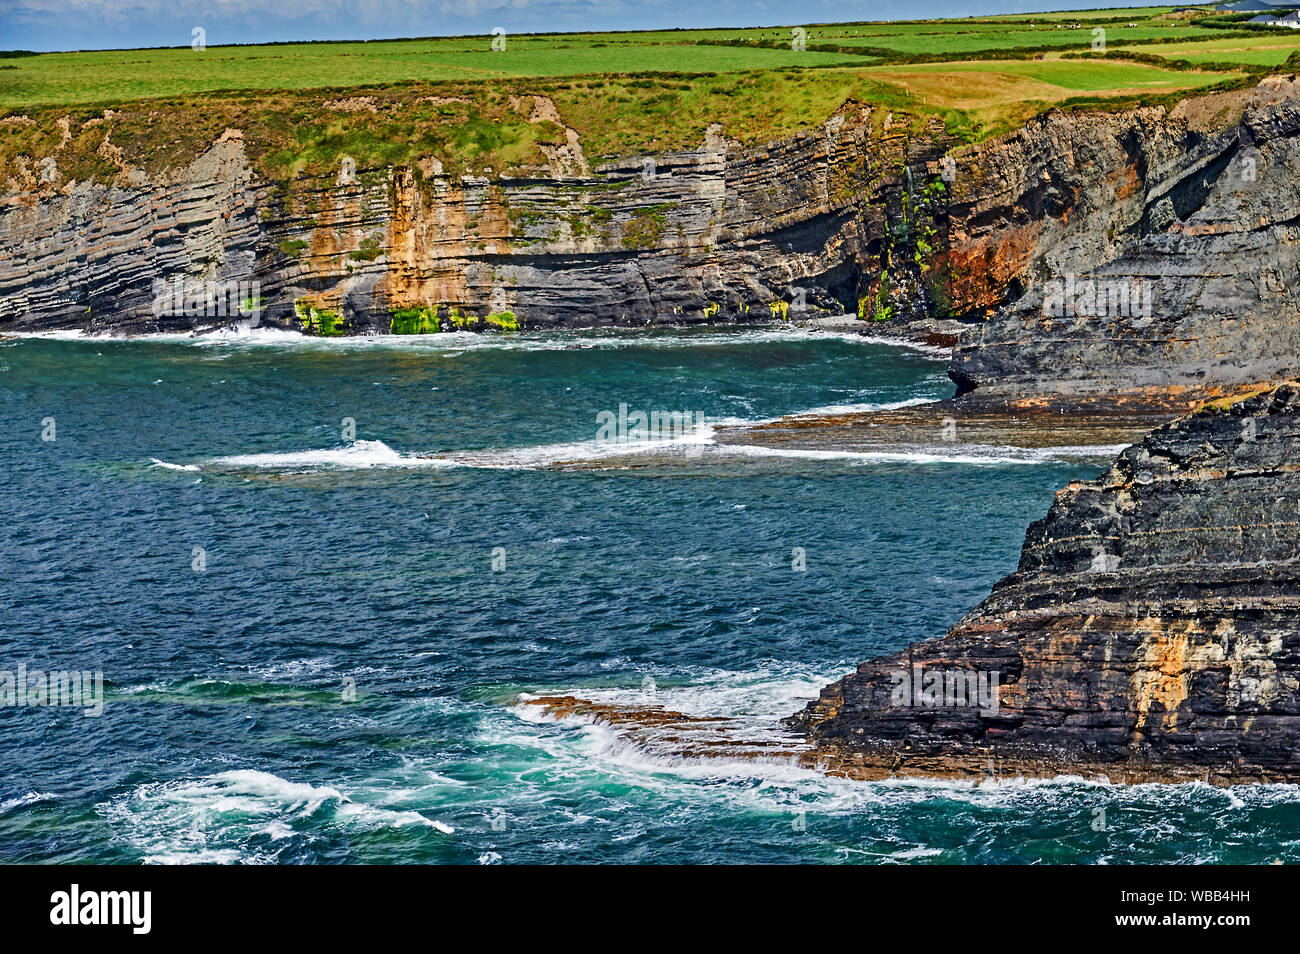 Acantilados Bromore, Condado de Kerry, República de Irlanda forma parte del atlántico salvaje, una ruta turística que sigue la costa oeste de Irlanda. Foto de stock